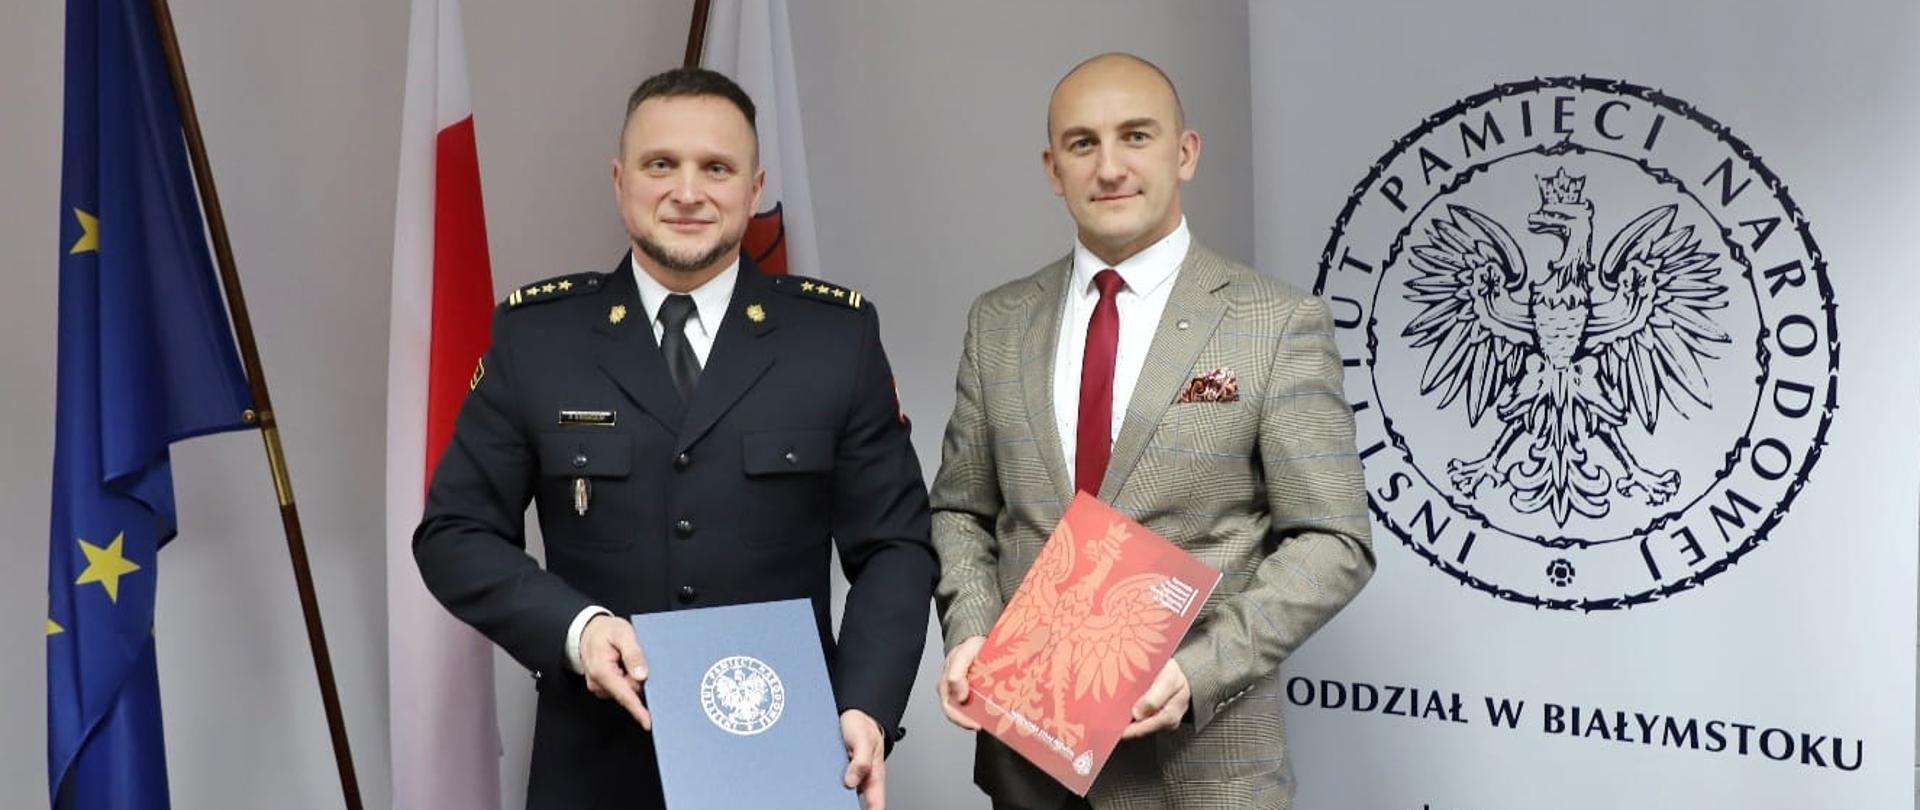 Dwie osoby stoją trzymają dokumenty w dłoni z tyłu za nimi flagi Polski i UE.